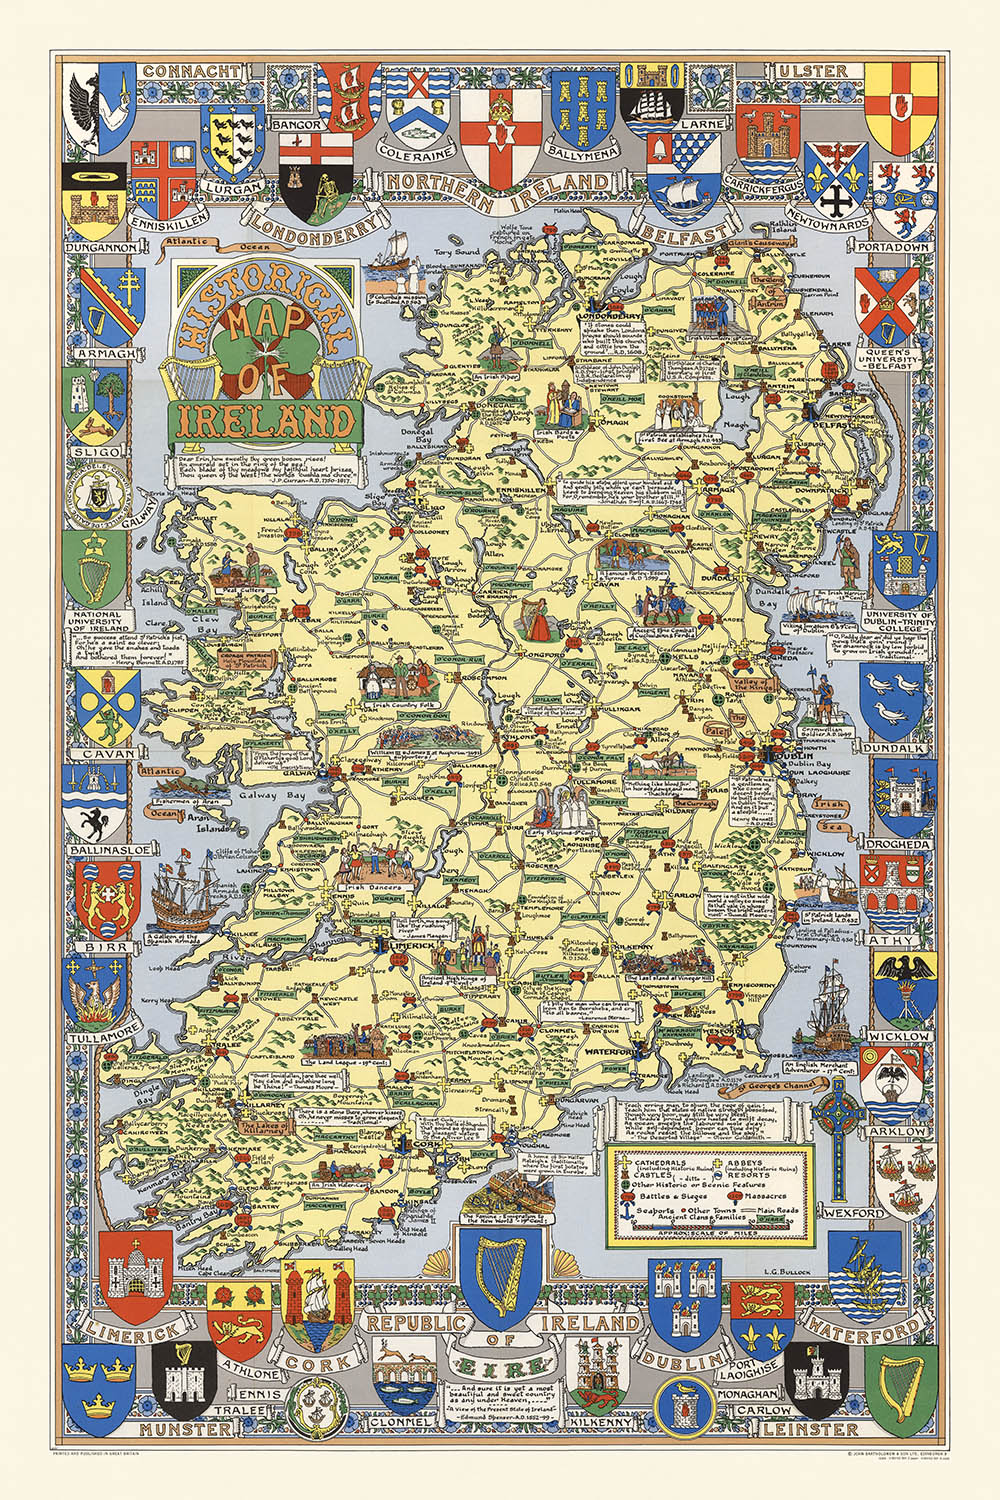 Alte Bildkarte von Irland von Bullock, 1955: Dublin, Belfast, Wikinger-Invasion, französische Invasion, Clans